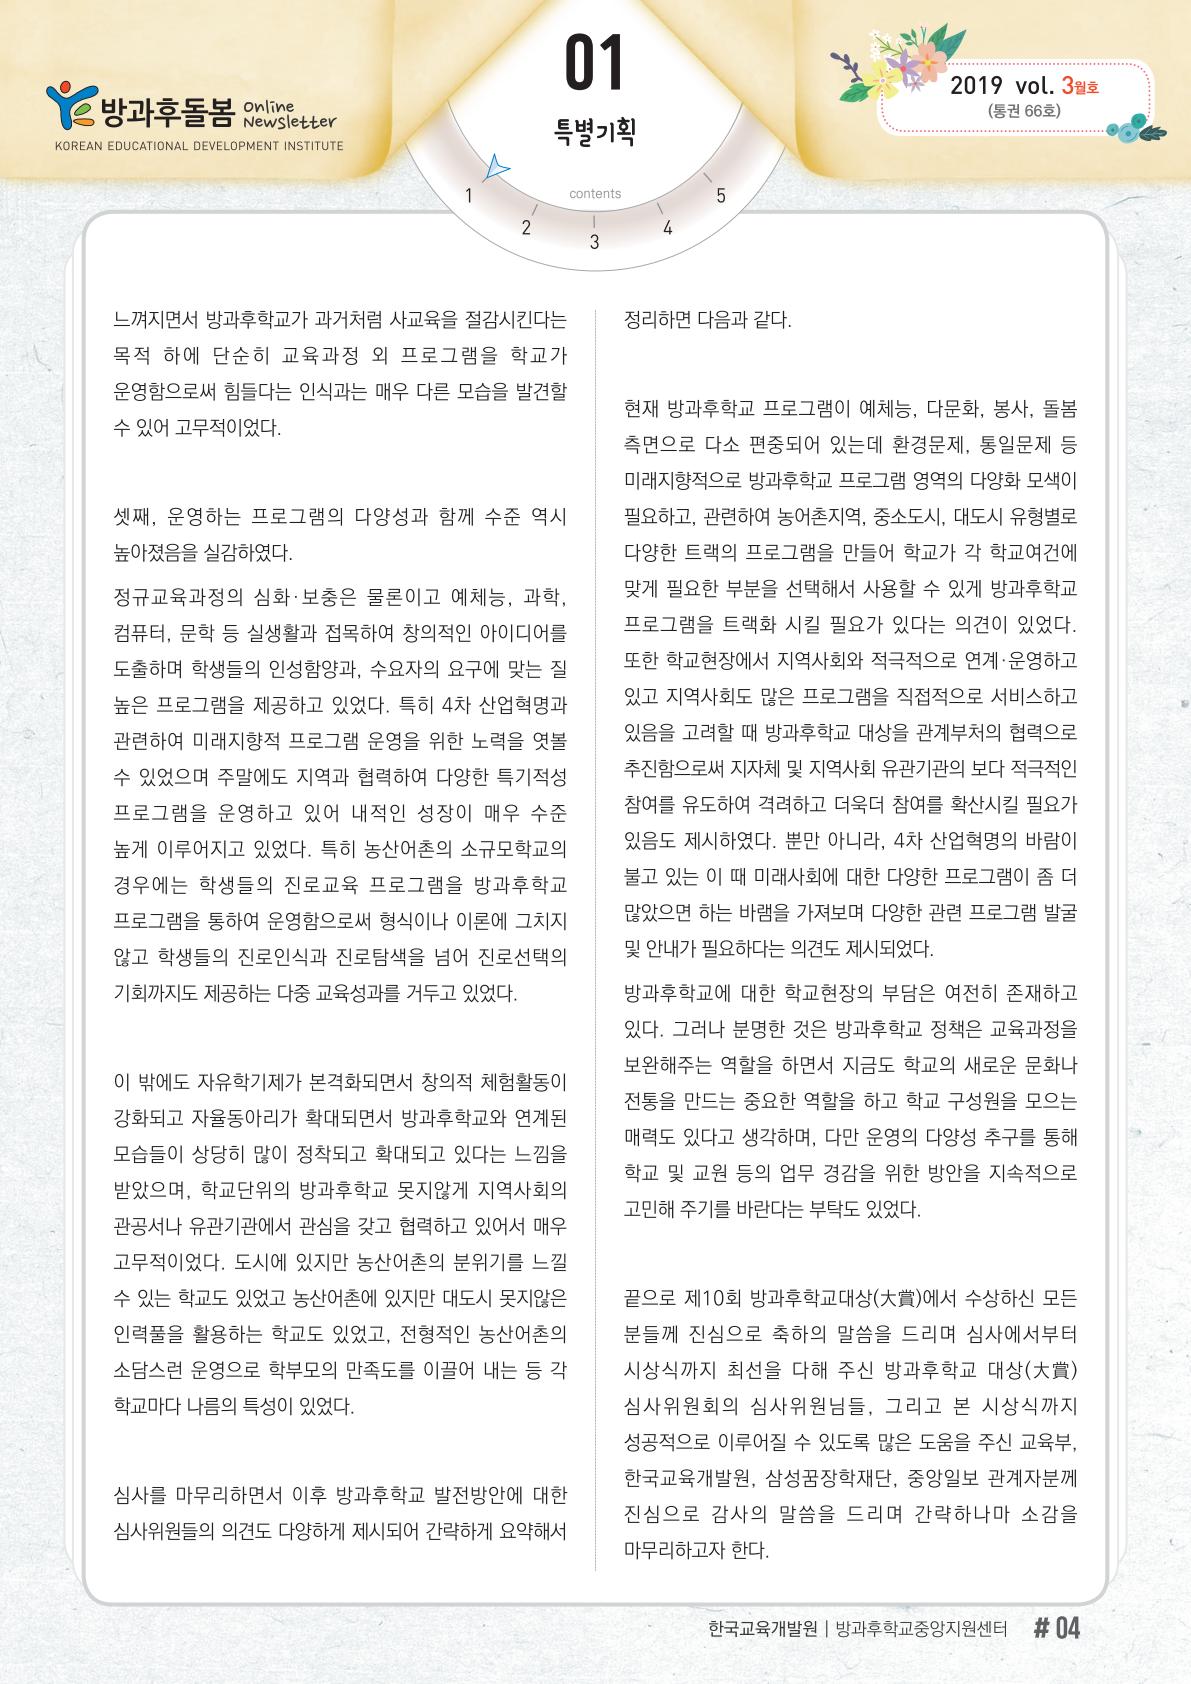 「제10회 방과후학교대상(大賞)」심사경과 보고 및 총평 3 